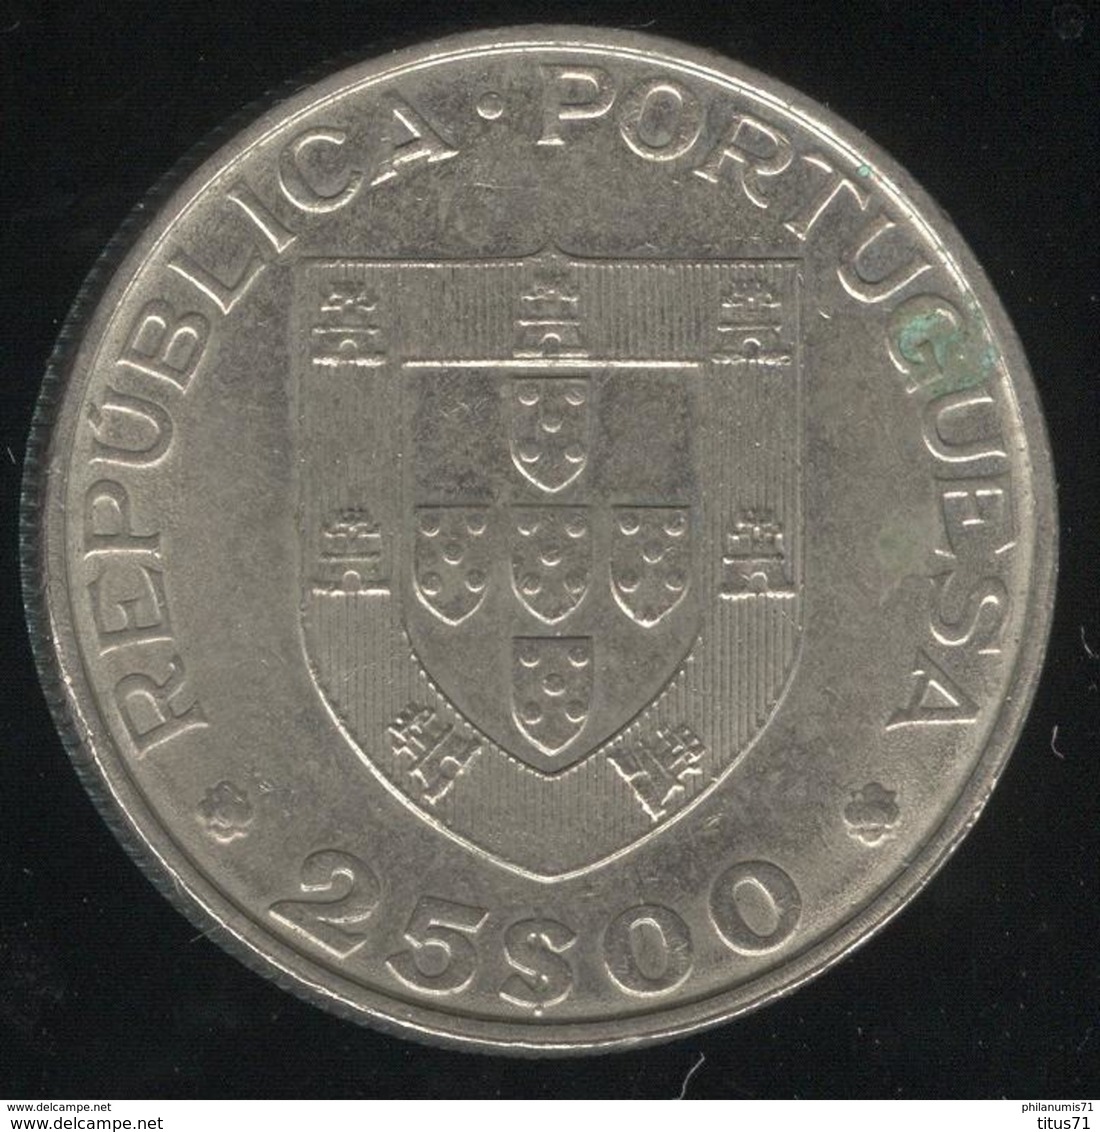 25 Escudos Portugal 1986 - L'entrée Du Portugal Dans L'Union Européenne - Portogallo